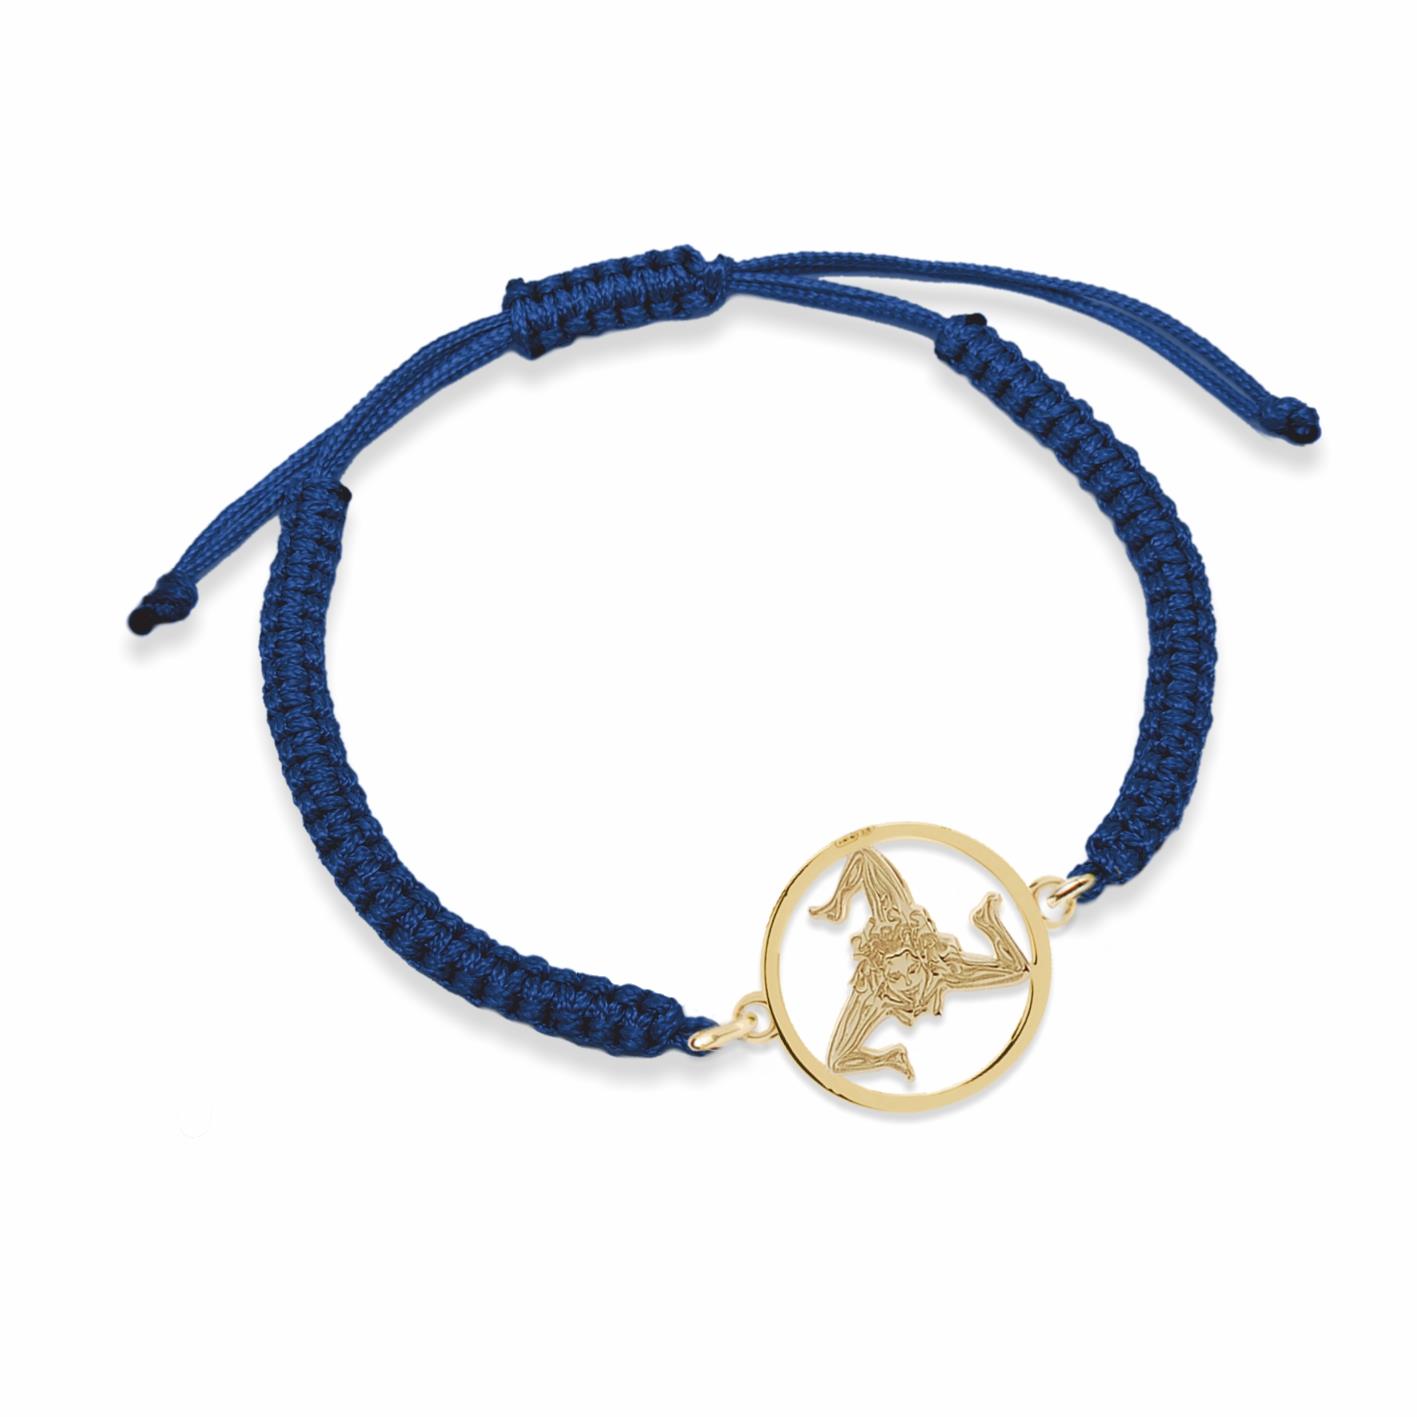 Bracciale in nylon color blu con simbolo della Trinacria racchiusa nel cerchio in argento dorato - MY SICILY